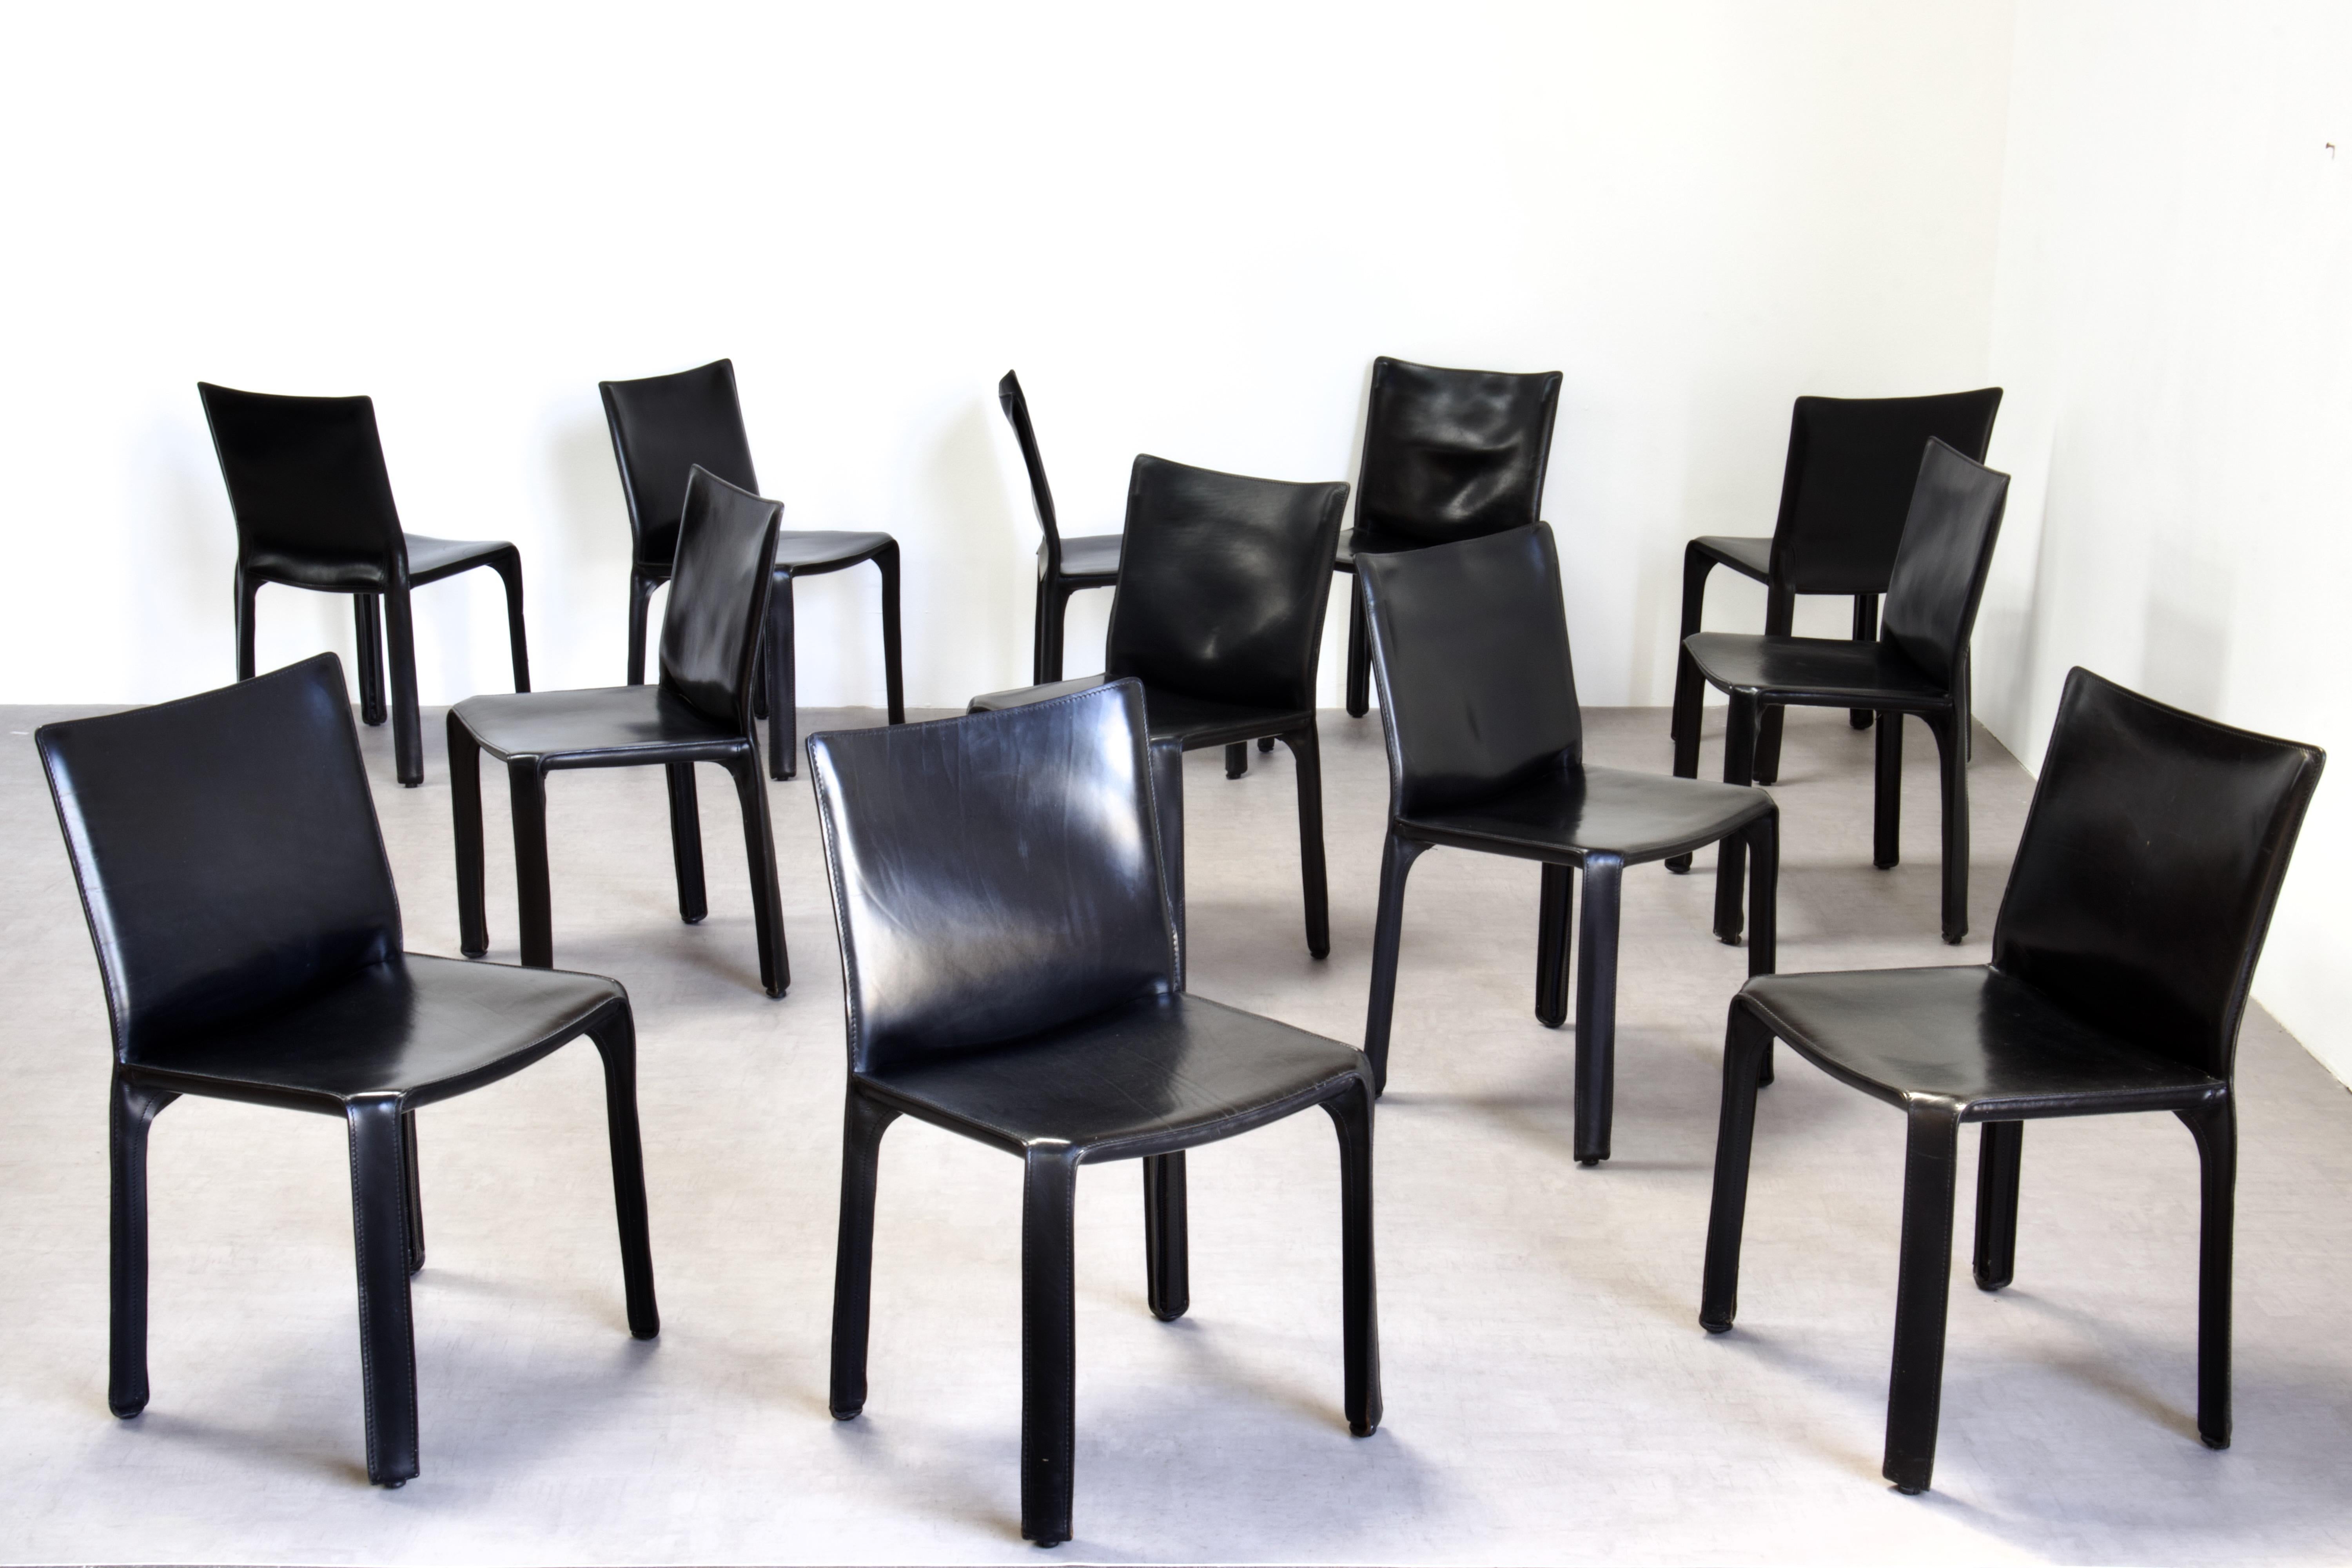 Satz von 12 Mario Bellini CAB 412 Stühlen, hergestellt von Cassina in den 1980er Jahren. Flexibler Stahlrahmen, überzogen mit einer Haut aus hochwertigem schwarzem Sattelleder. Dieser elegante, vielseitige Stuhl eignet sich gleichermaßen für das